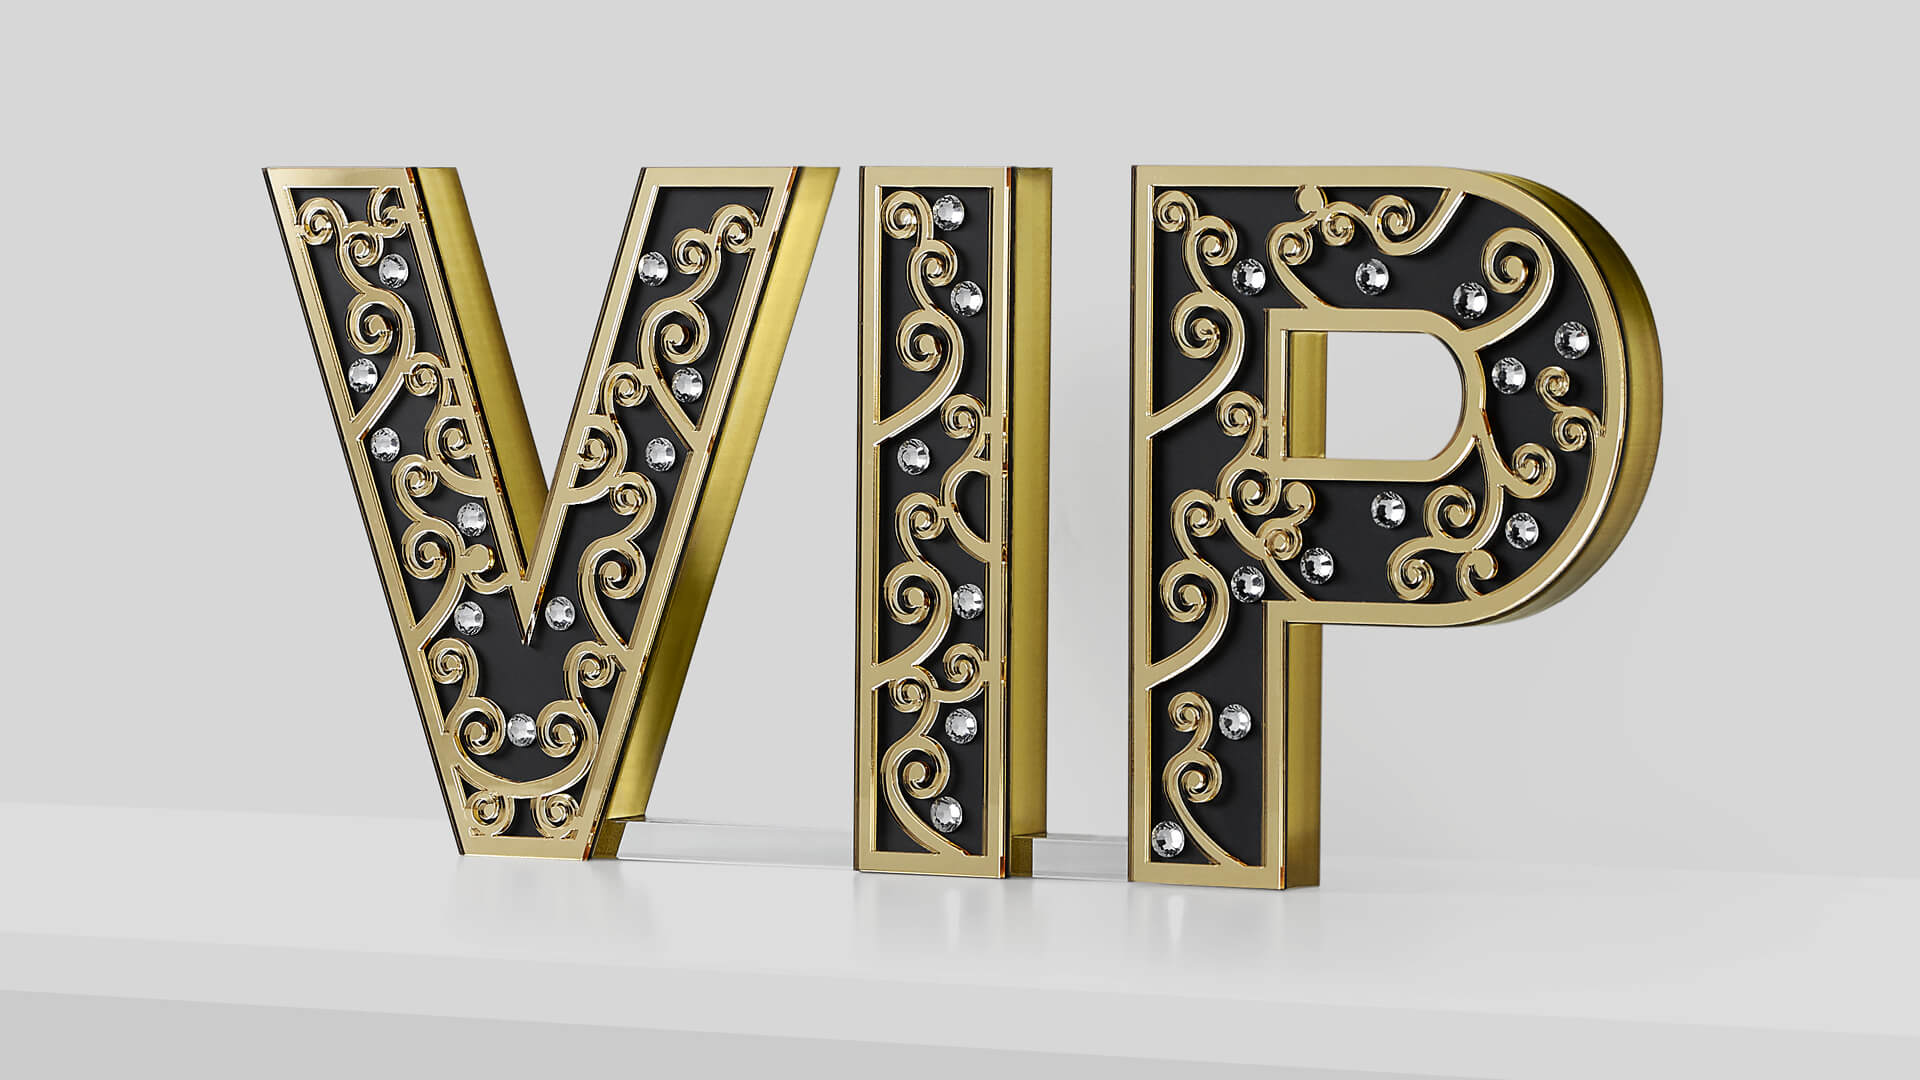 vip litery - ładne-litery-vip-litery-przestrzenne-vip-letters-vip-ozdobne-litery-dekoracyjne-litery-vip